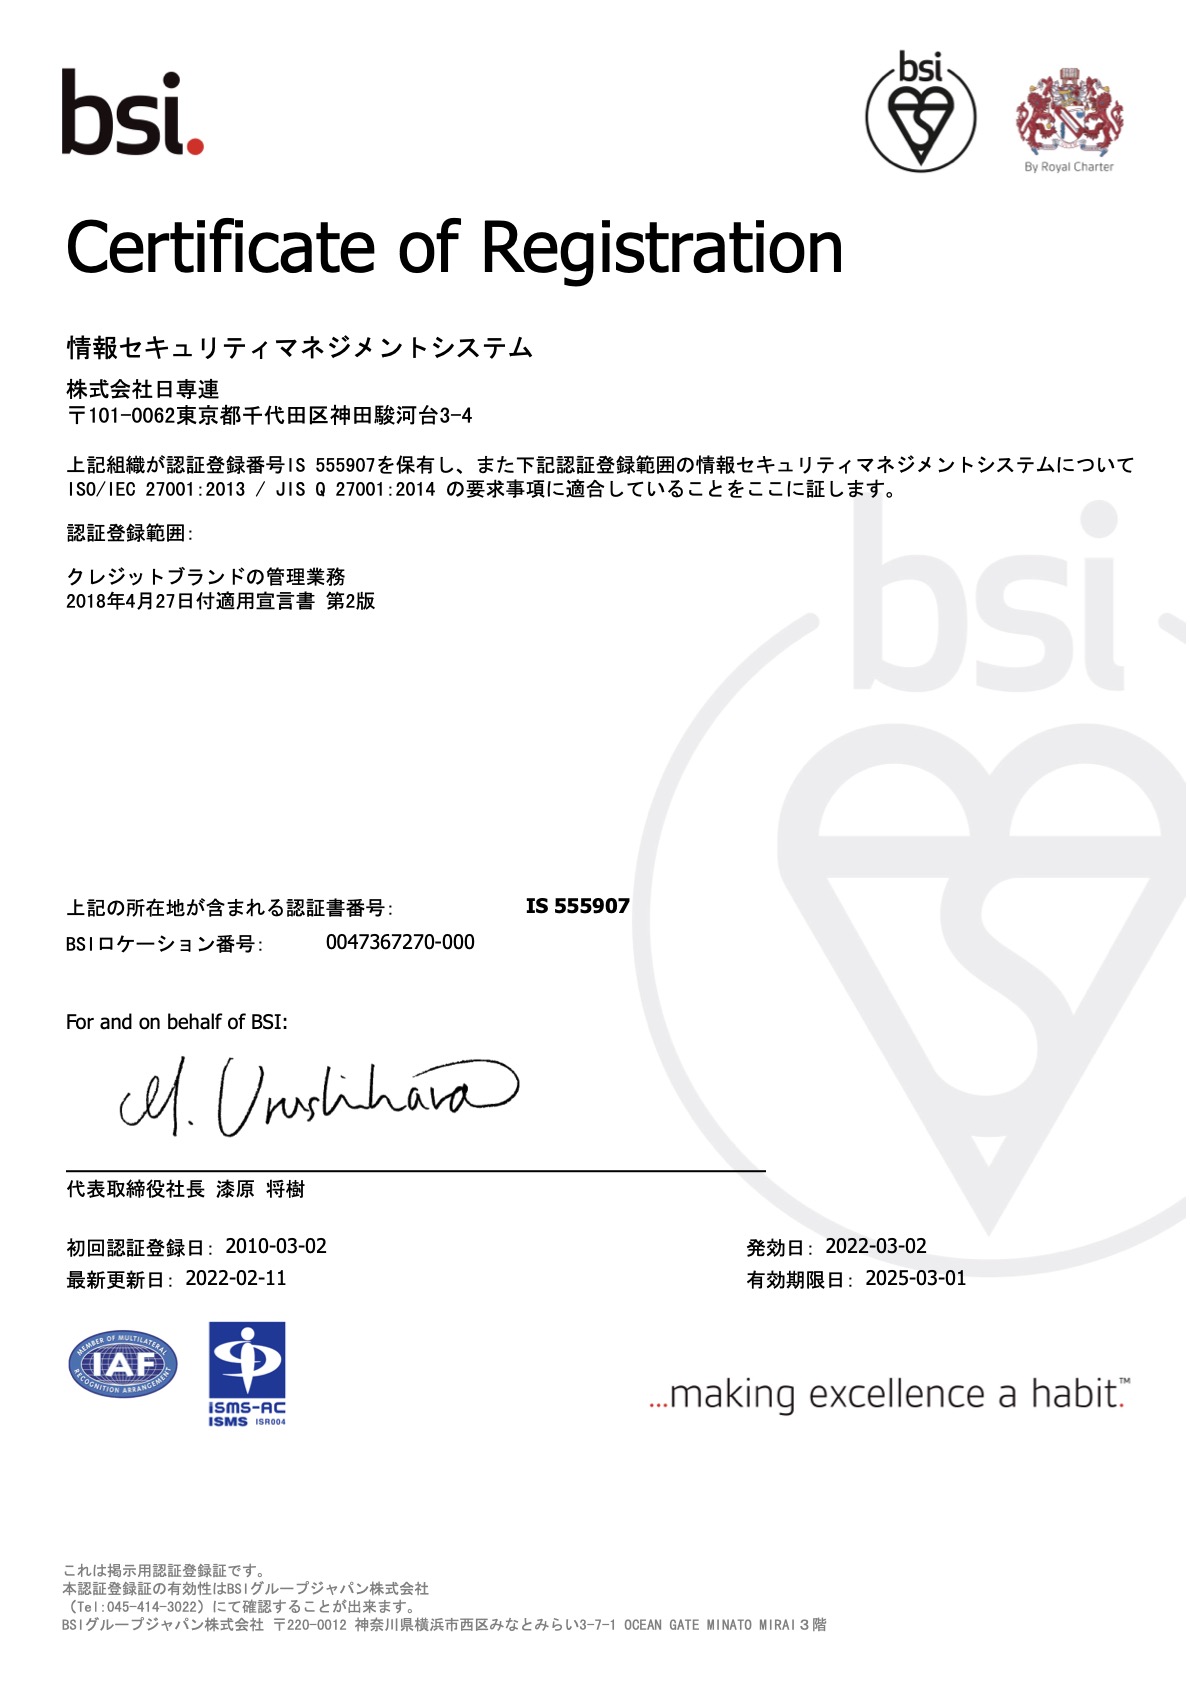 当社は、クレジットカード業界のセキュリティ基準であるPCIDSS準拠認定を取得しています。当社は、情報セキュリティマネジメントシステム規格「ISO/IEC 27001:2013 / JIS Q 27001:2014」の審査登録（認証）を受けています。